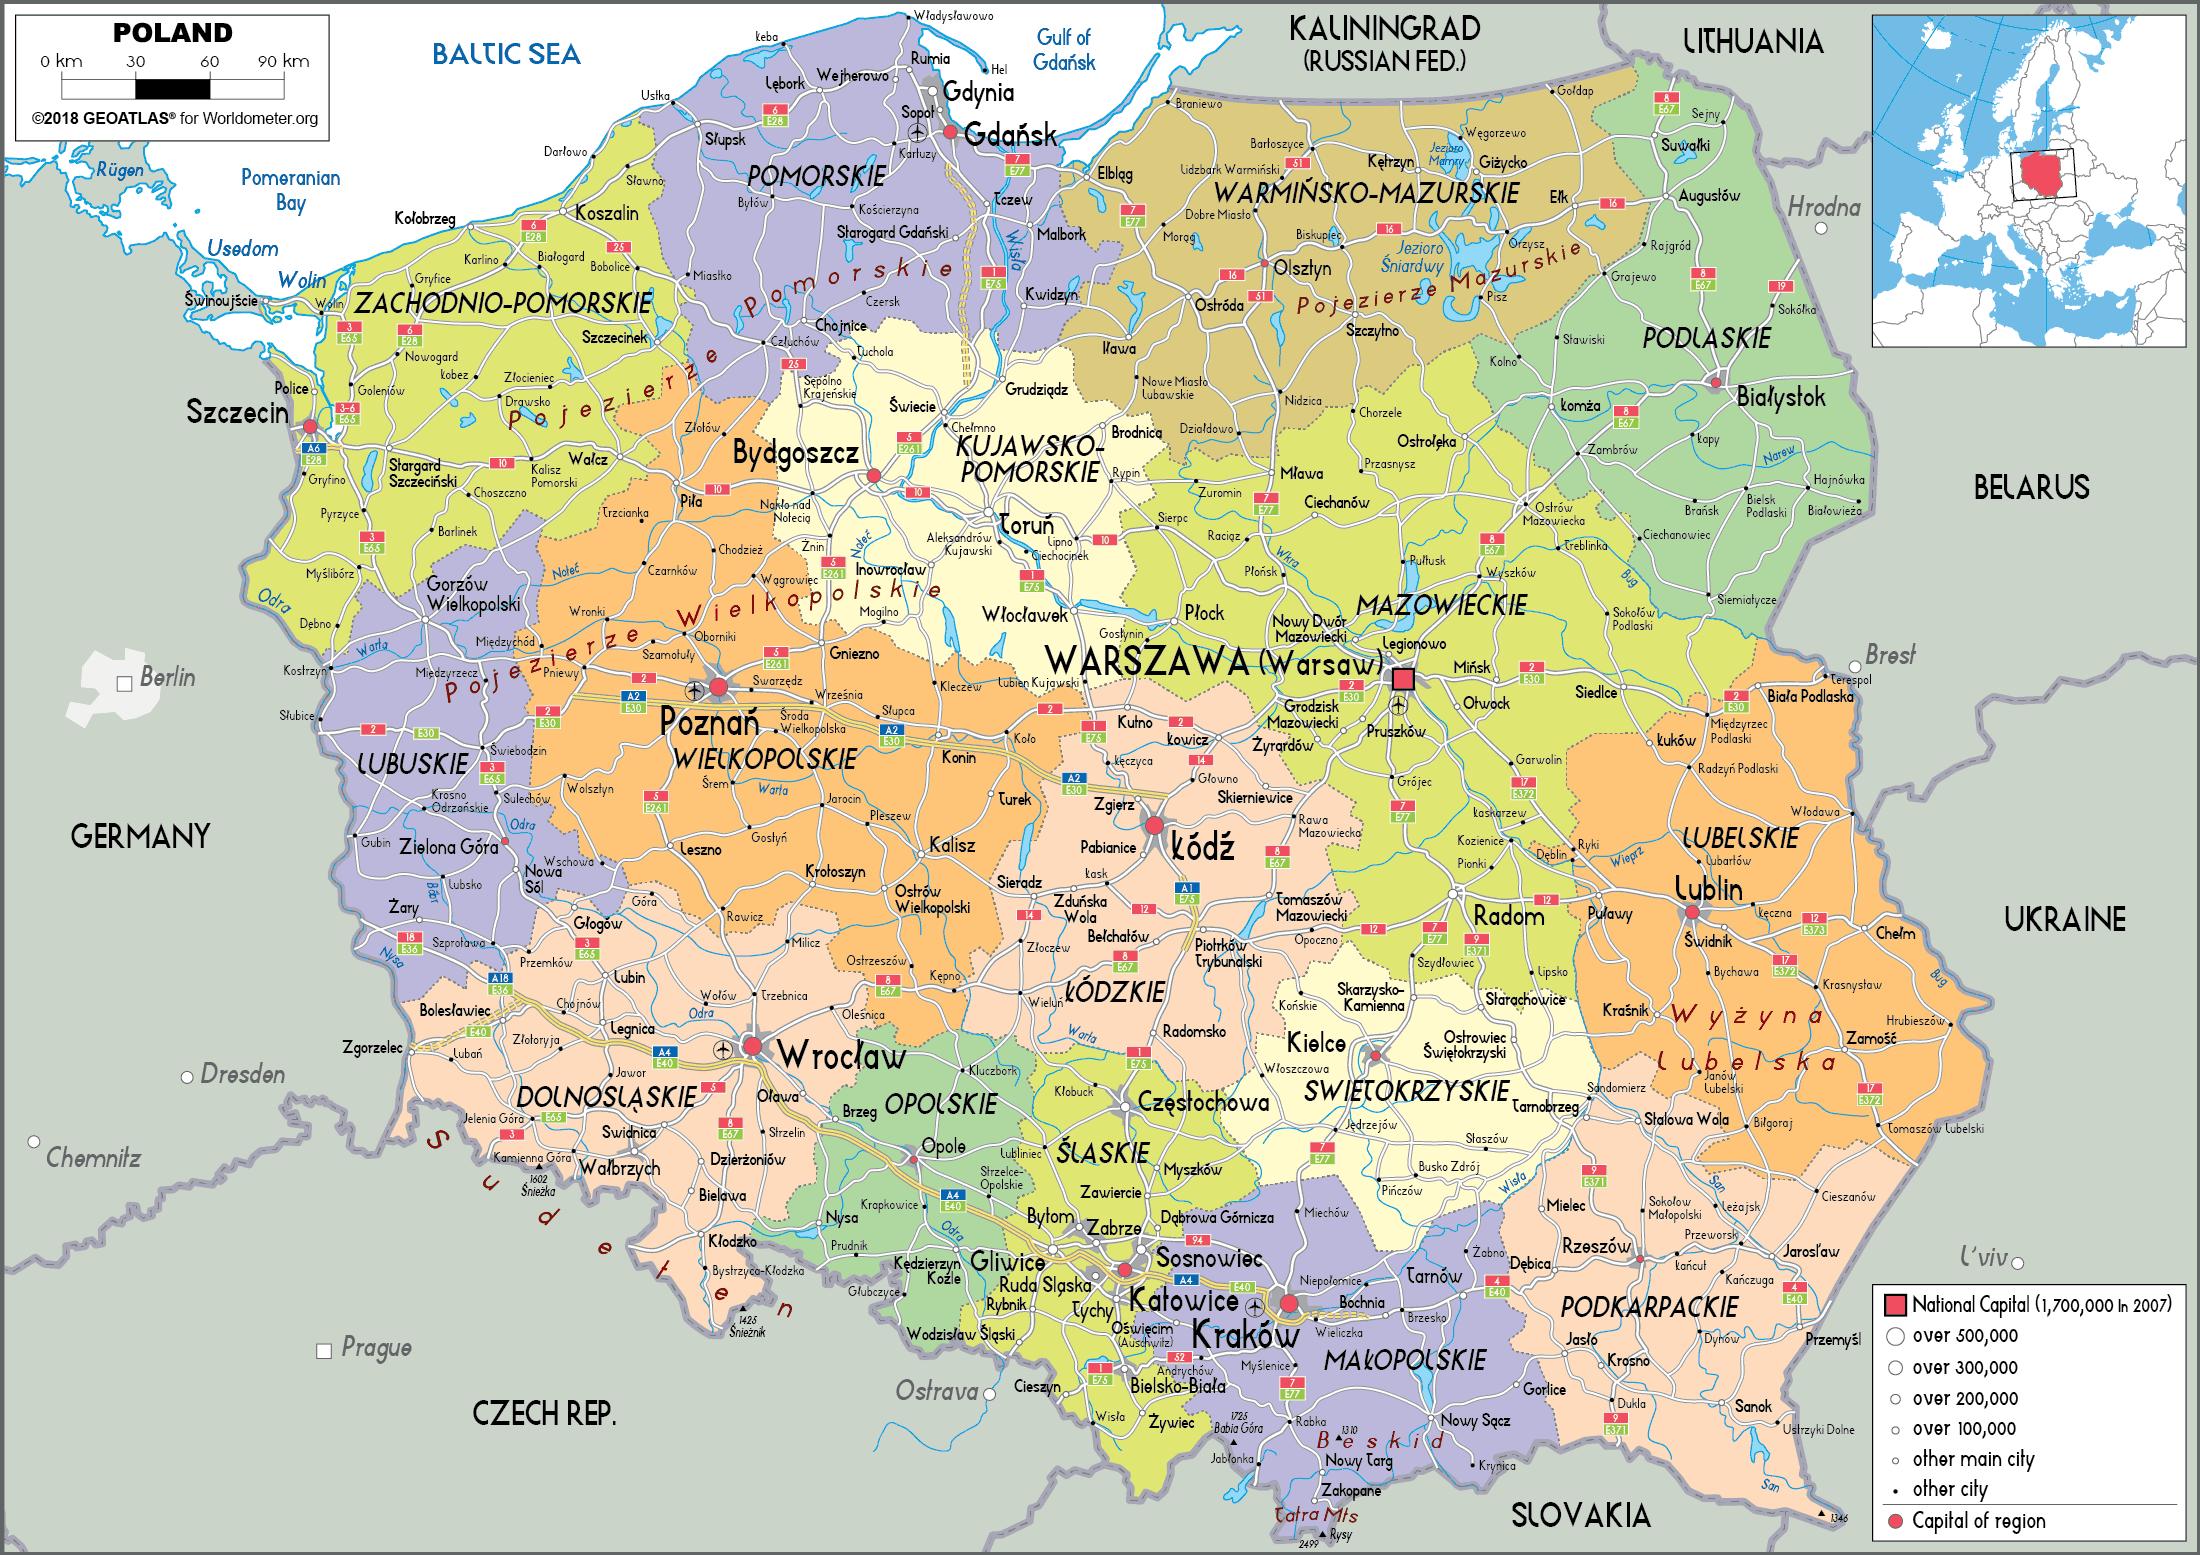 Mapa de Polònia i els països de l'entorn - Polònia i els països de l